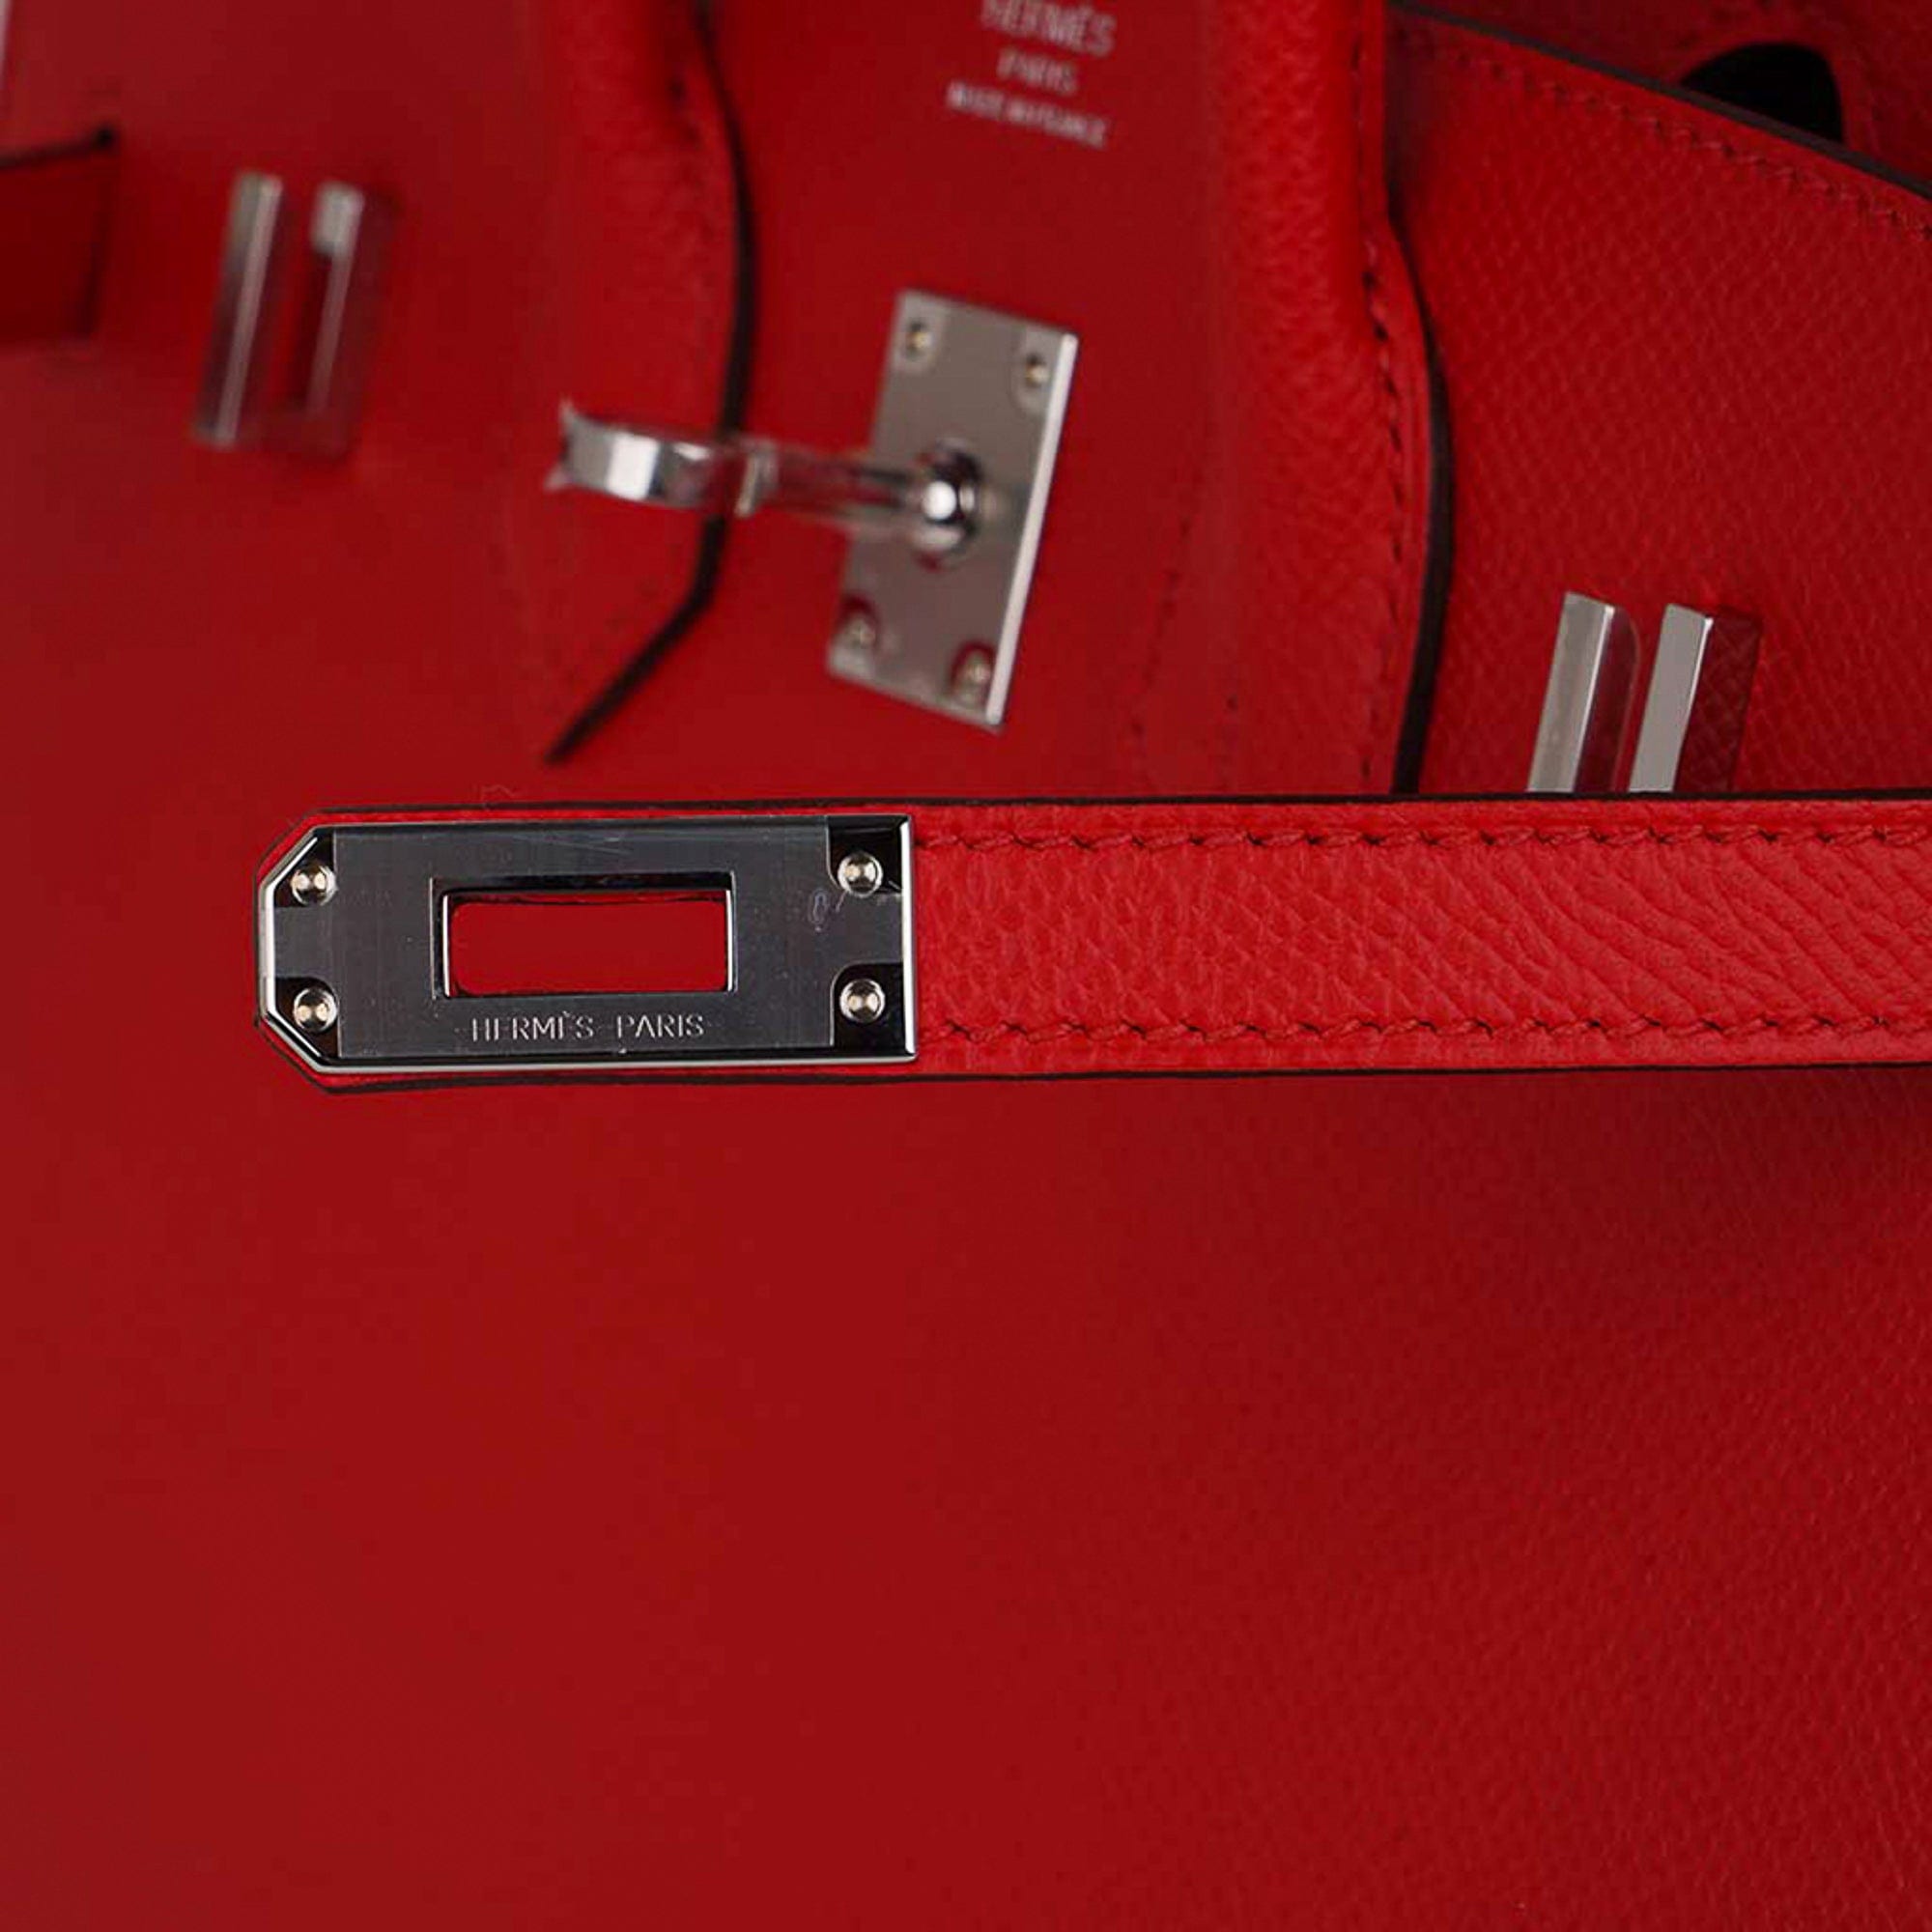 Hermes Birkin Sellier 30 Rouge Casaque Epsom Gold Hardware